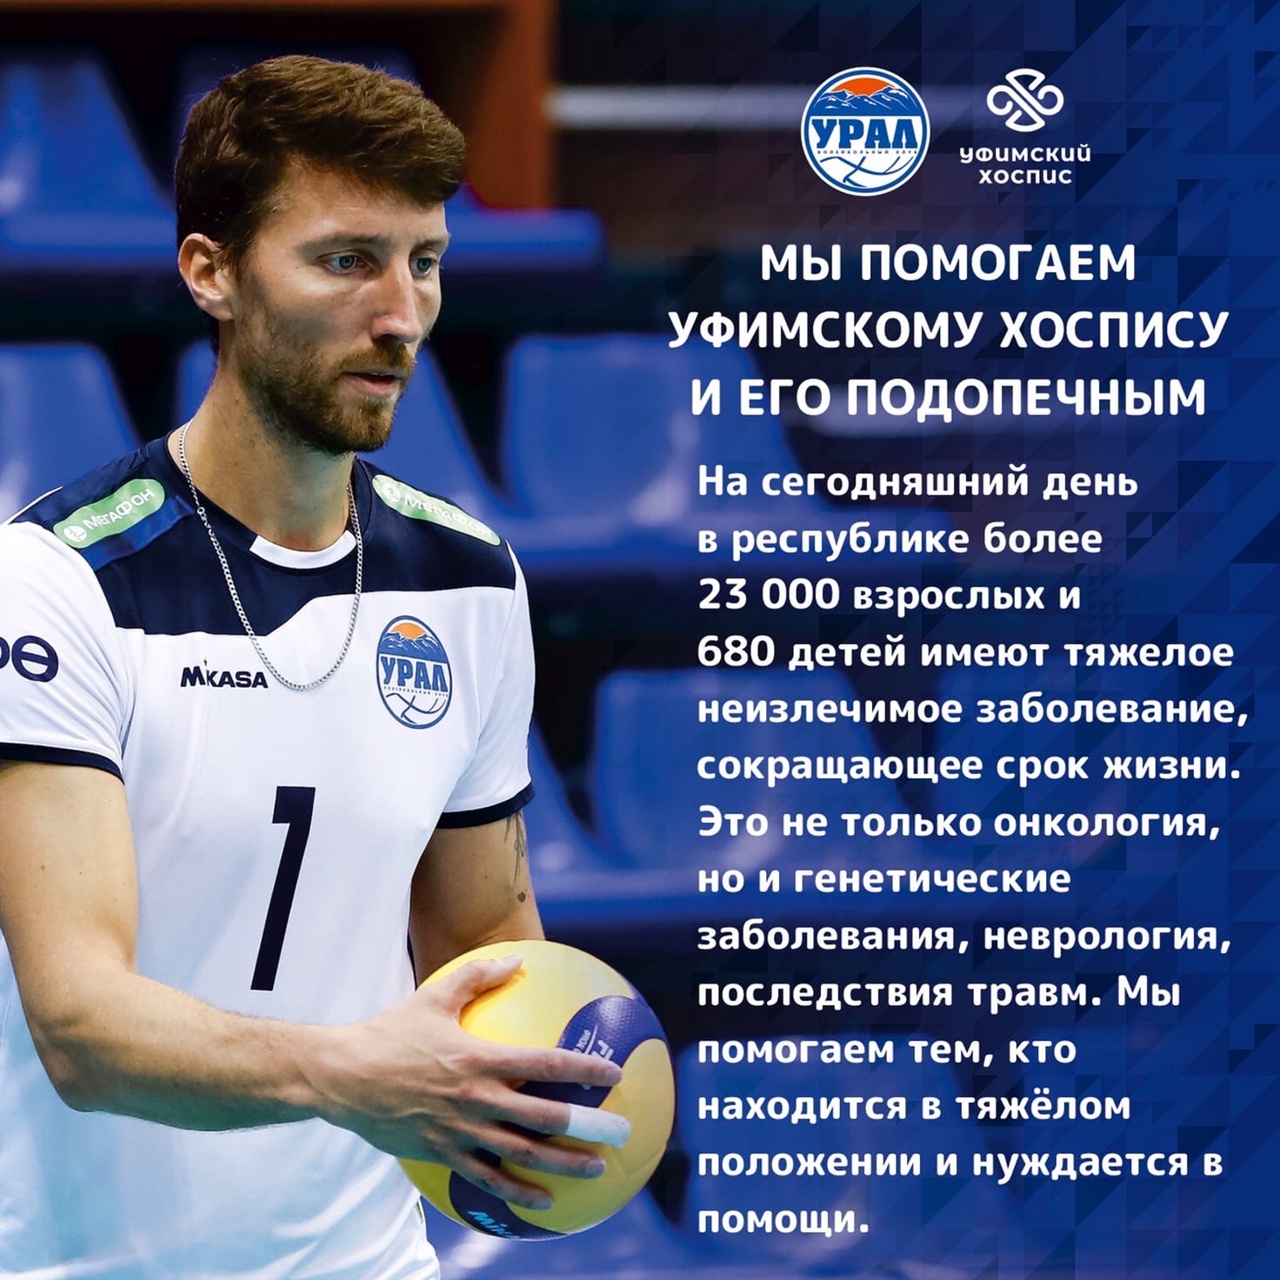 Волейбольный «Урал» проиграл кемеровскому «Кузбассу» в четырех партиях